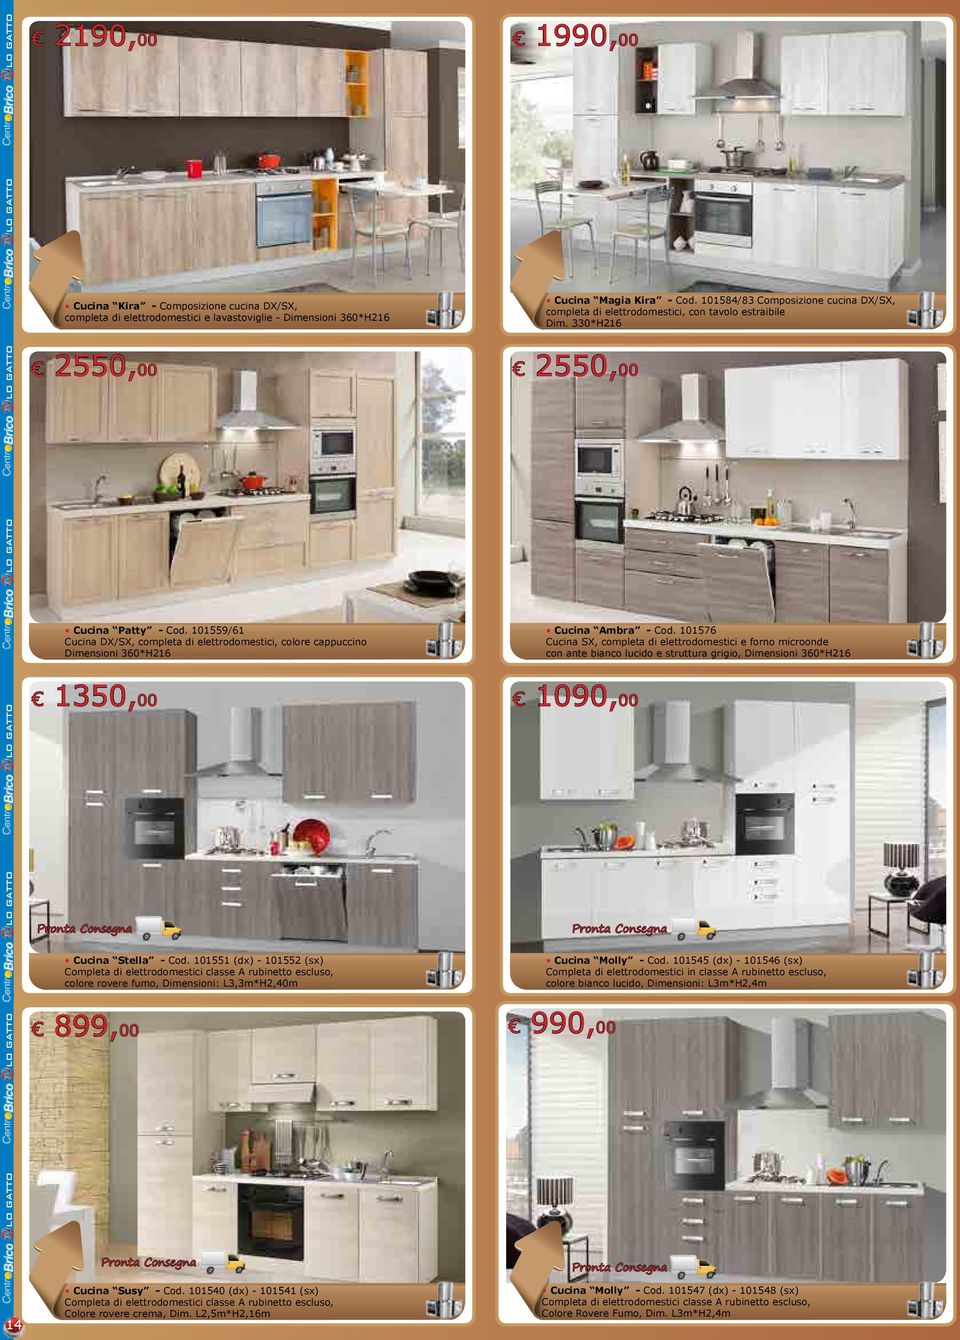 101559/61 Cucina DX/SX, completa di elettrodomestici, colore cappuccino Dimensioni 360*H216 Cucina Ambra - Cod.